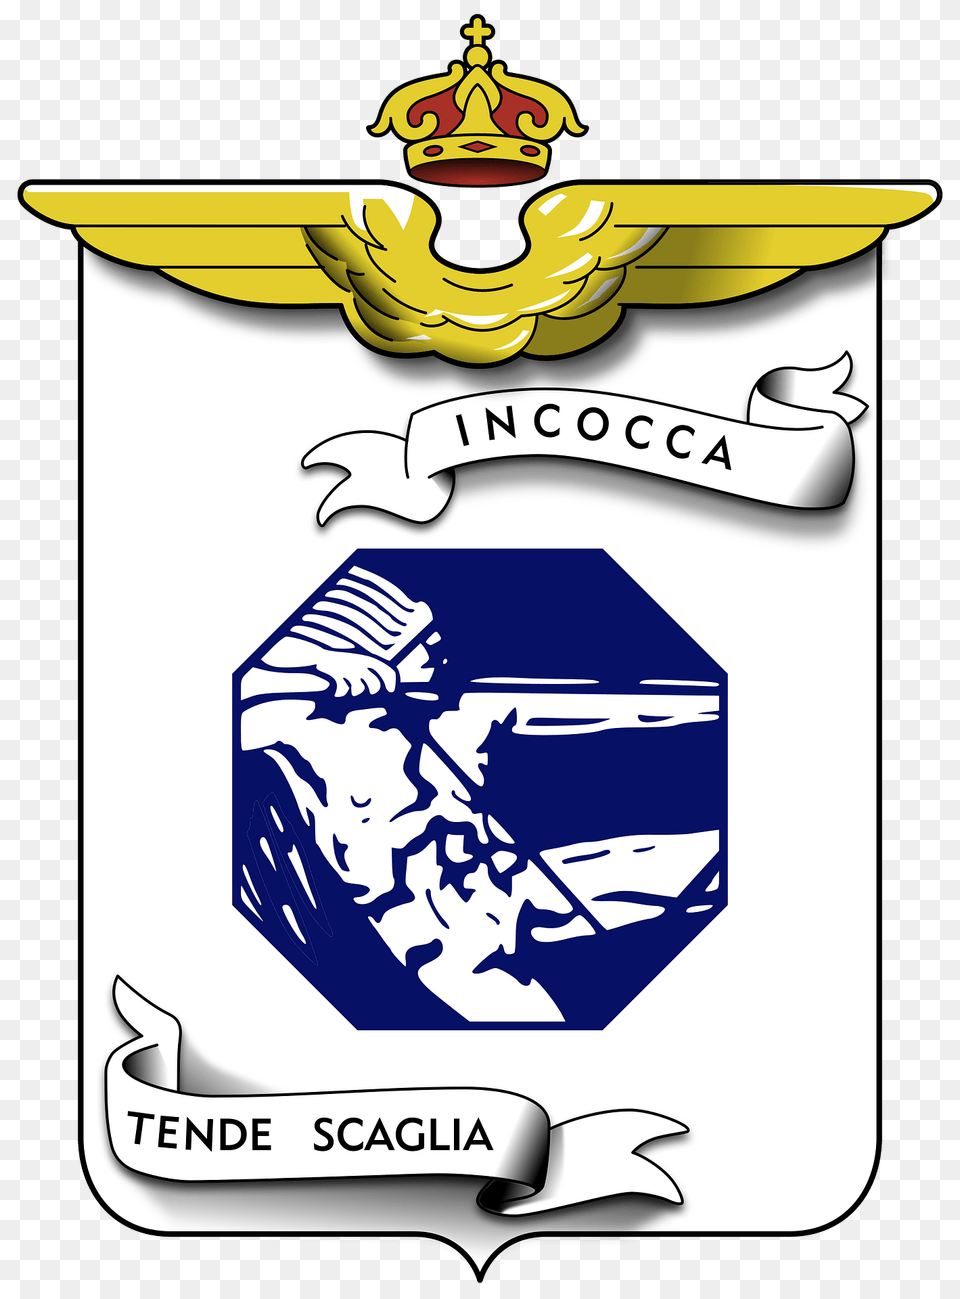 Coa 1 Stormo Caccia Clipart, Emblem, Symbol, Logo Free Png